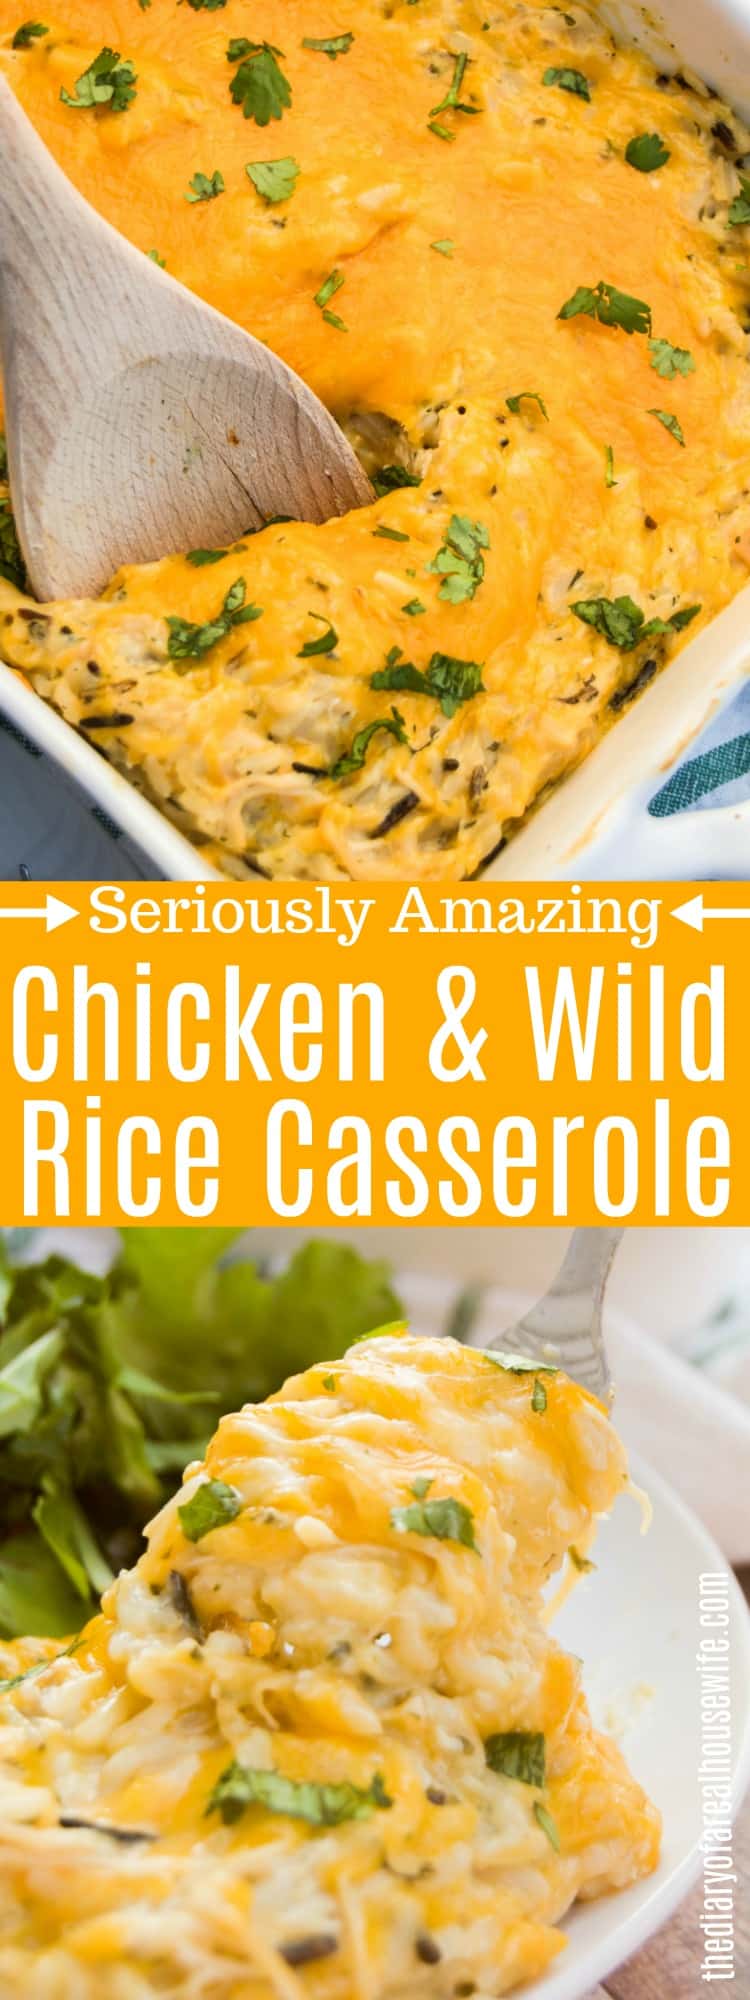 Chicken and Wild Rice Casserole